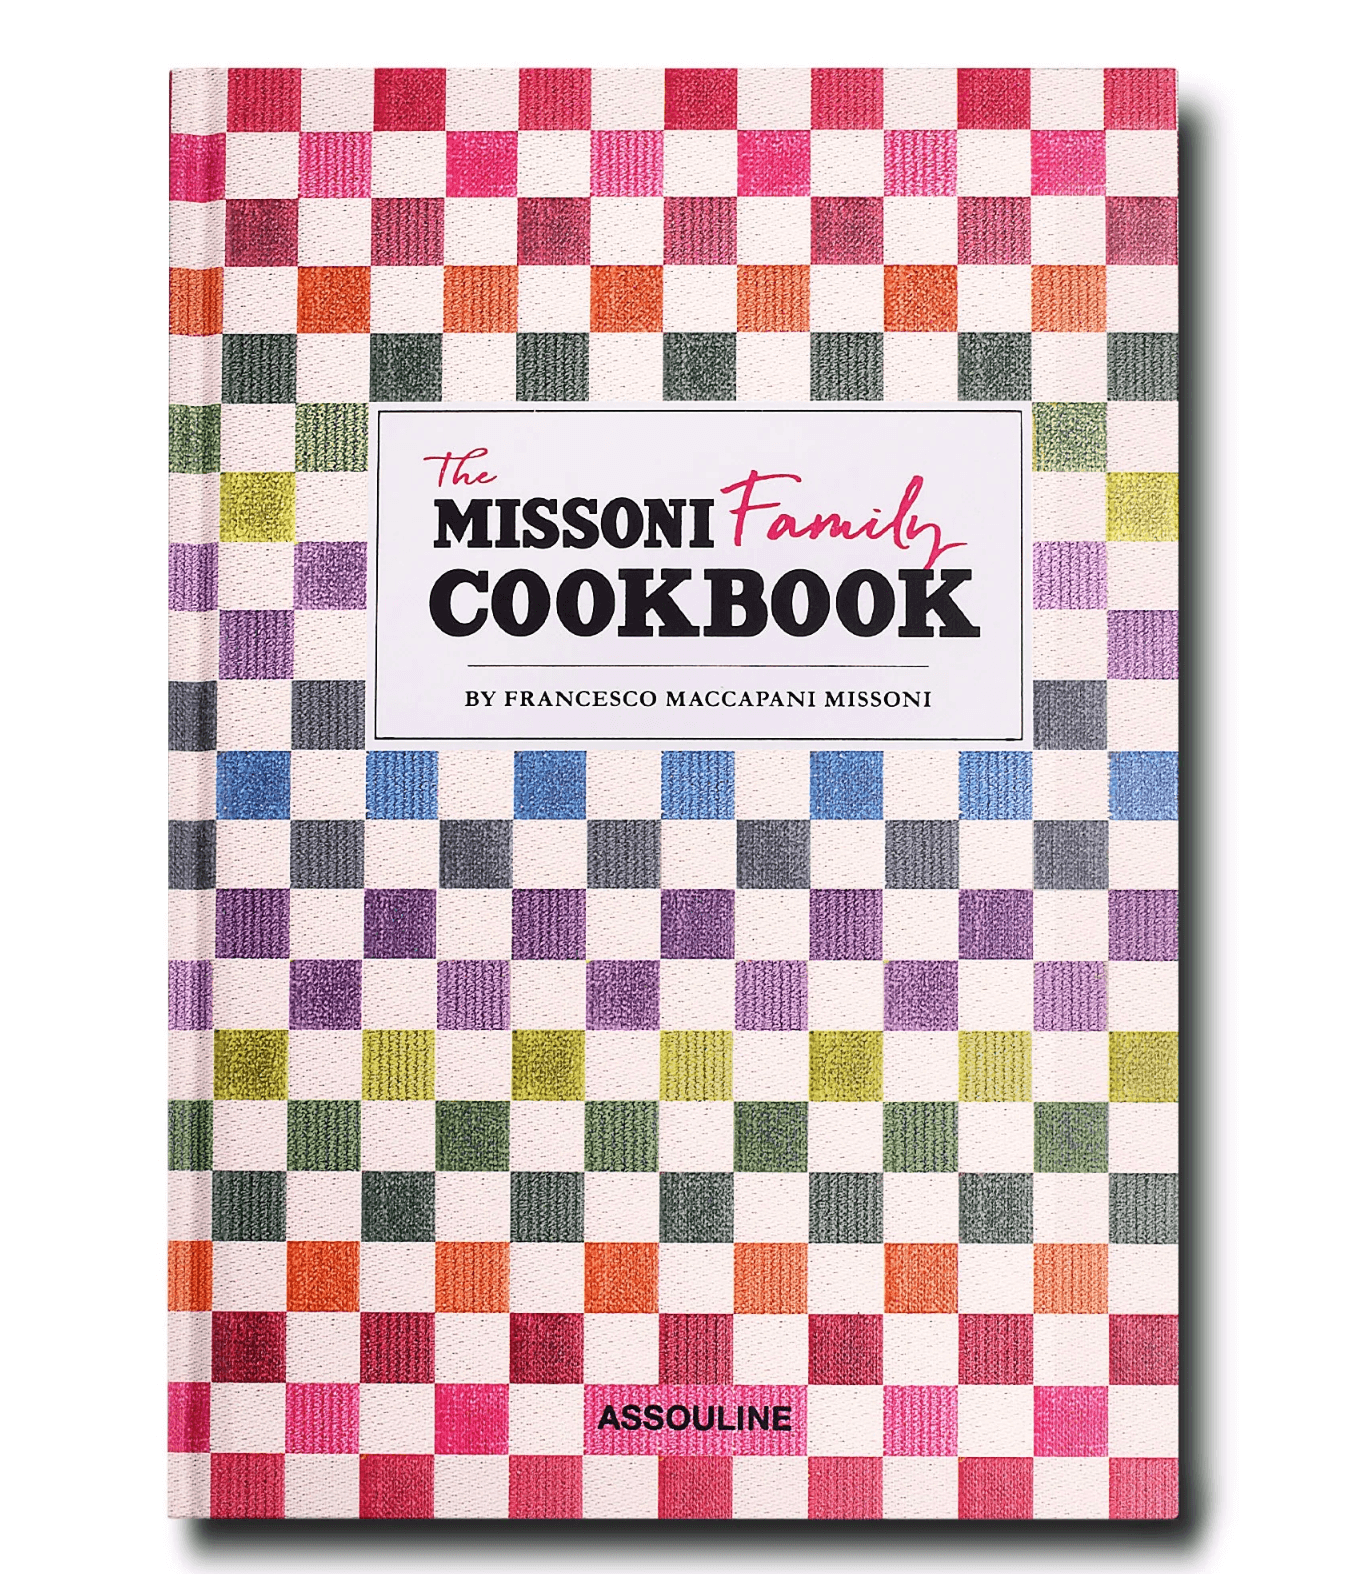 Missoni Assouline cookbook